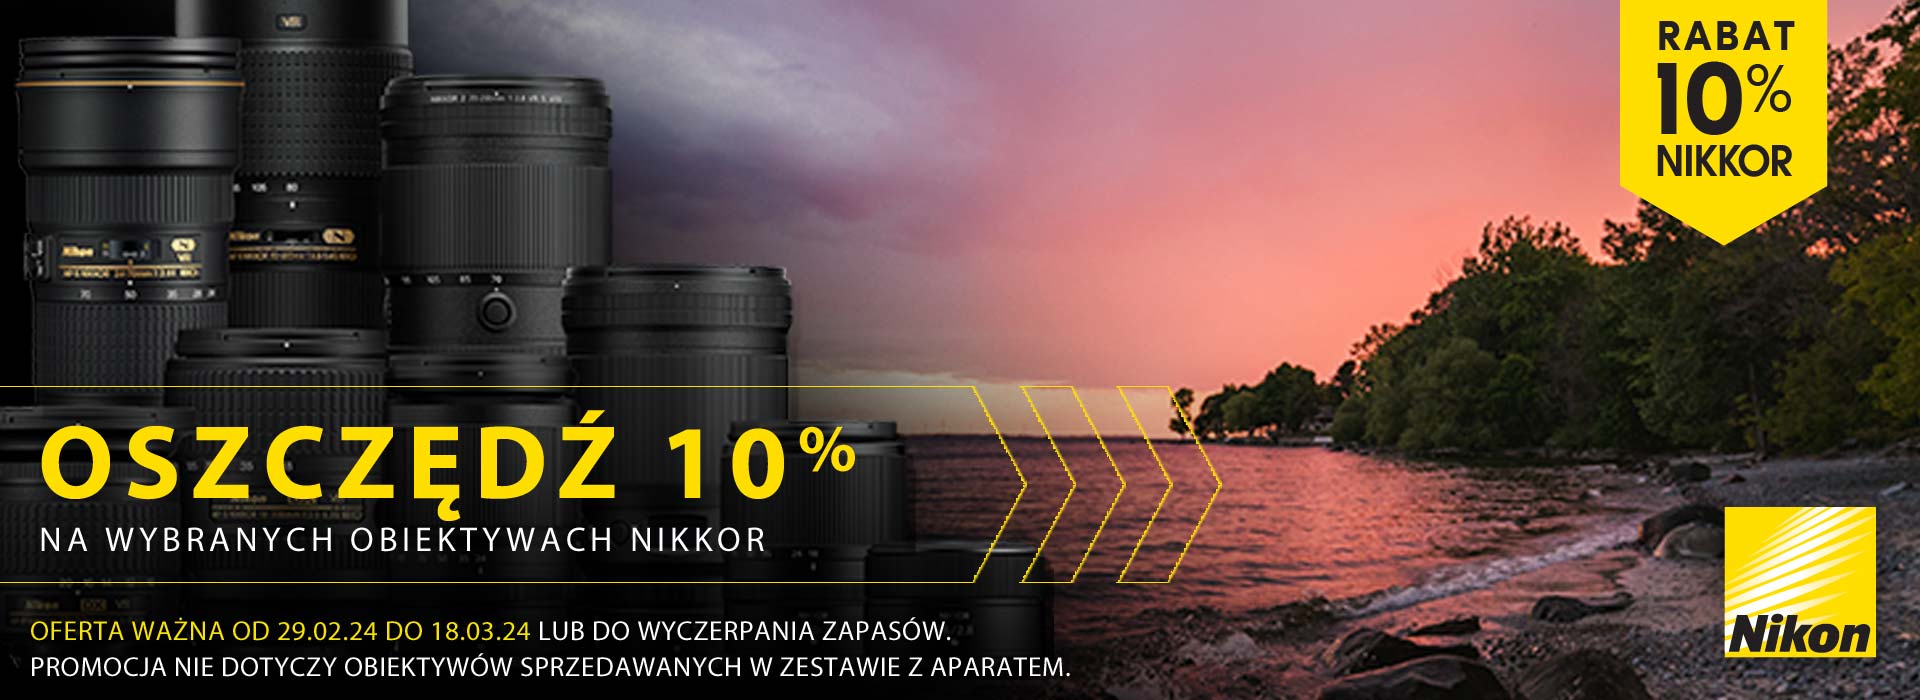 Oszczędź 10% na wybranych obiektywach Nikkor